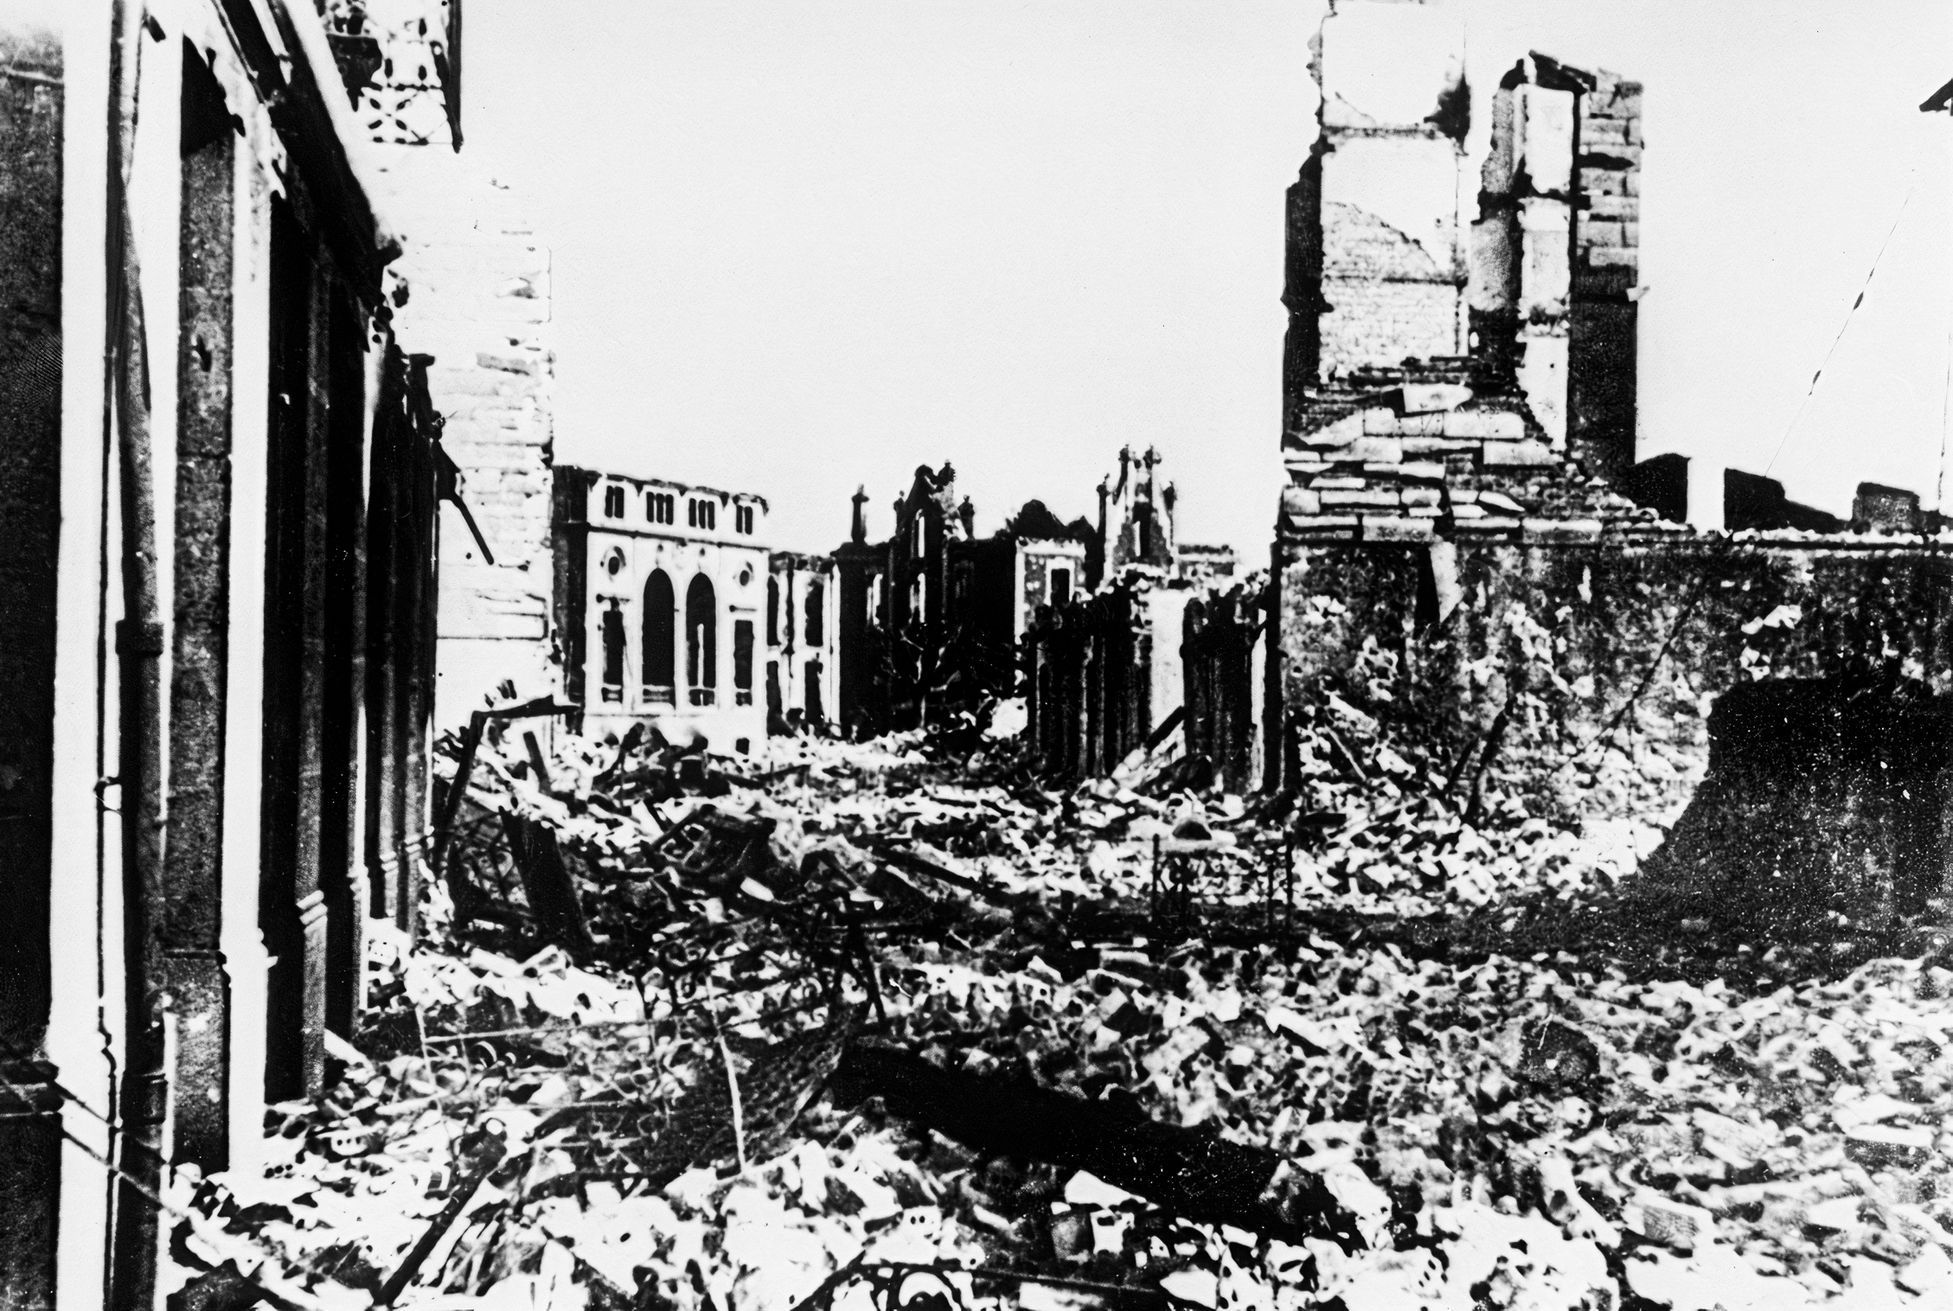 Fotogalerie / Guernica / Španělská občanská válka / Bombardování / Před 85 lety bylo baskické město Guernica ničivě bombardováno německým letectvem